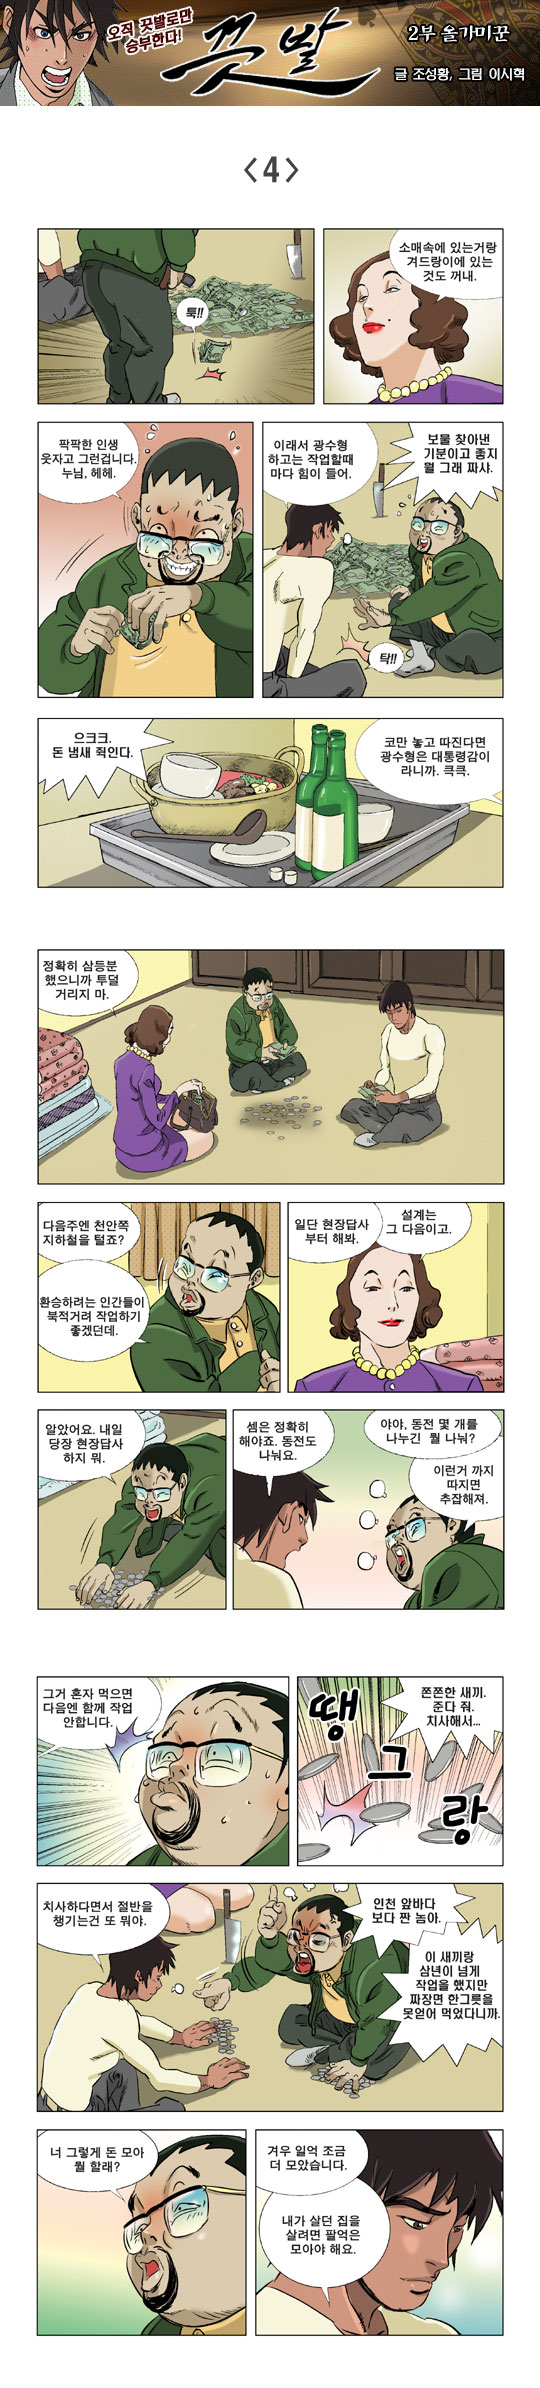 영상칼럼 ＆ 시사만평'떡매' 만드는 곳, ☞ 검색에서 한국 네티즌본부